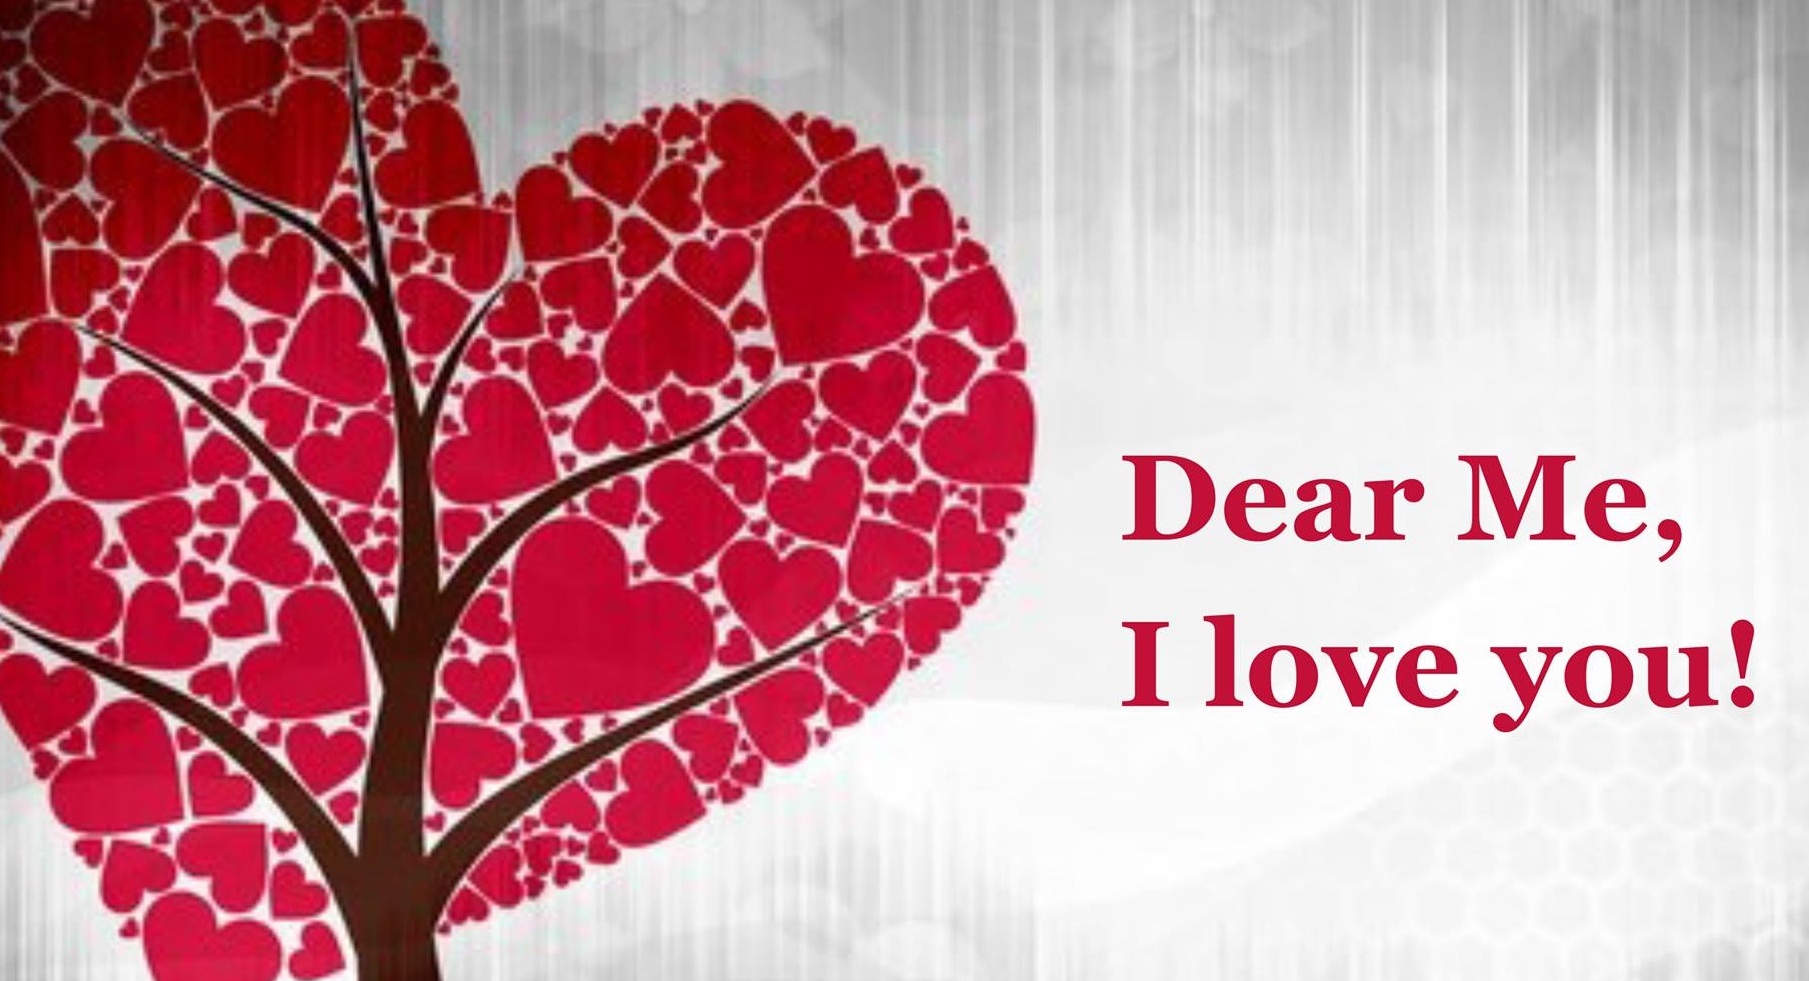 Dear ME, I love you!